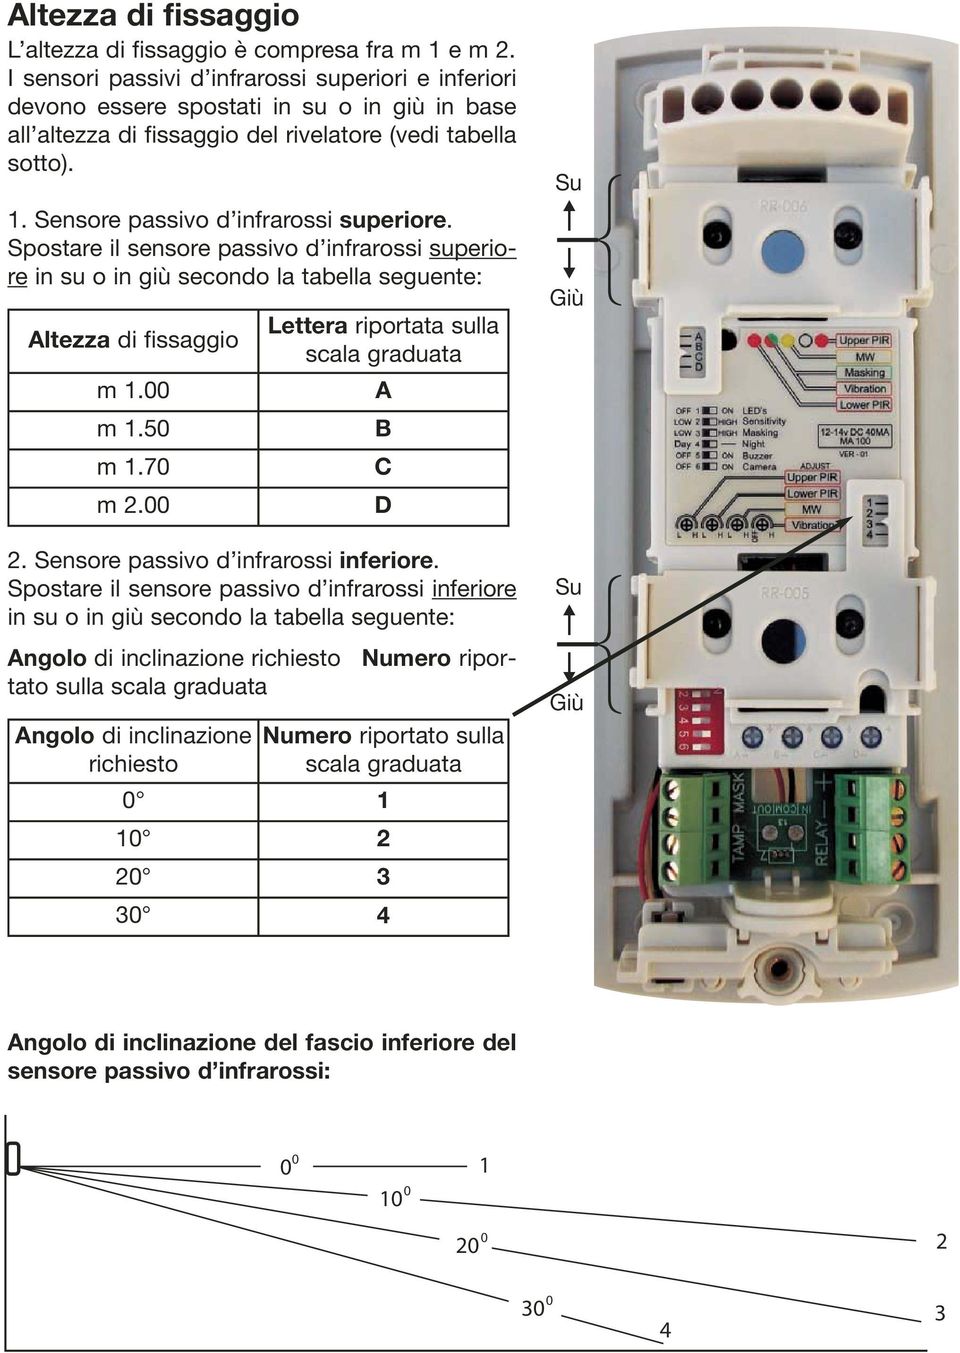 Sensore passivo d infrarossi superiore. Spostare il sensore passivo d infrarossi superiore in su o in giù secondo la tabella seguente: Altezza di fissaggio m 1.00 m 1.50 m 1.70 m 2.00 2.